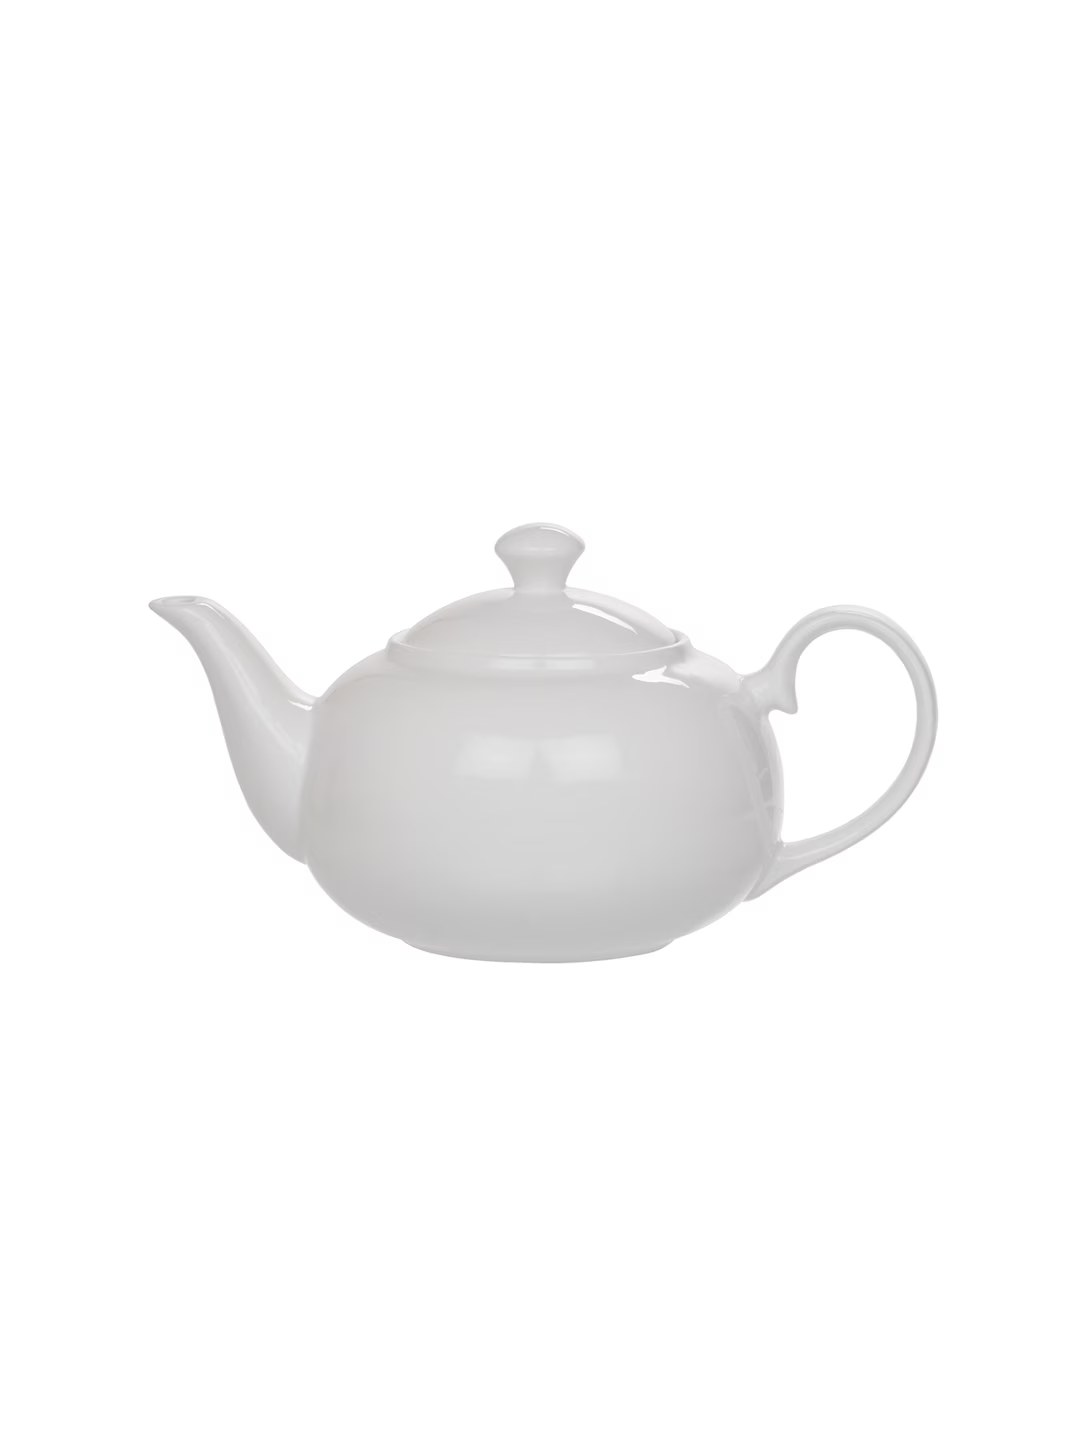 White Ceramic Tea Pot with Lid